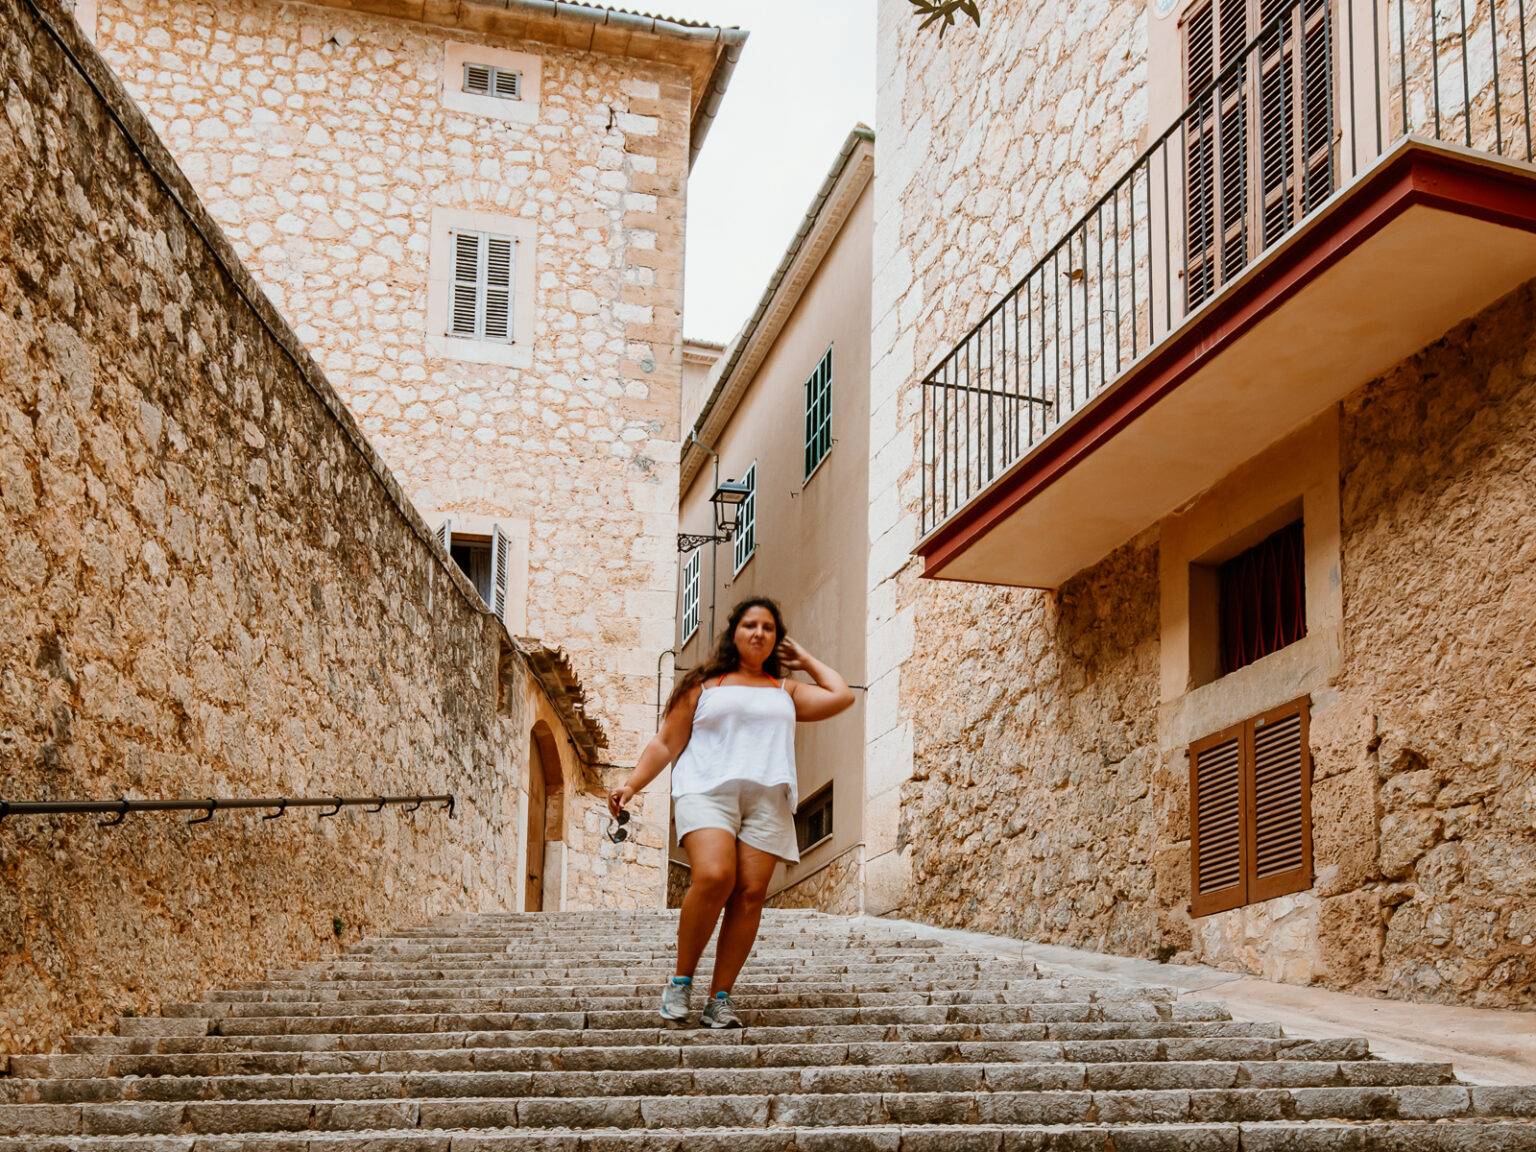 Eine Frau läuft auf einem aus Natursteinen geebneten Weg vorbei an breiten Balkonen in einem mallorquinischen Dorf.